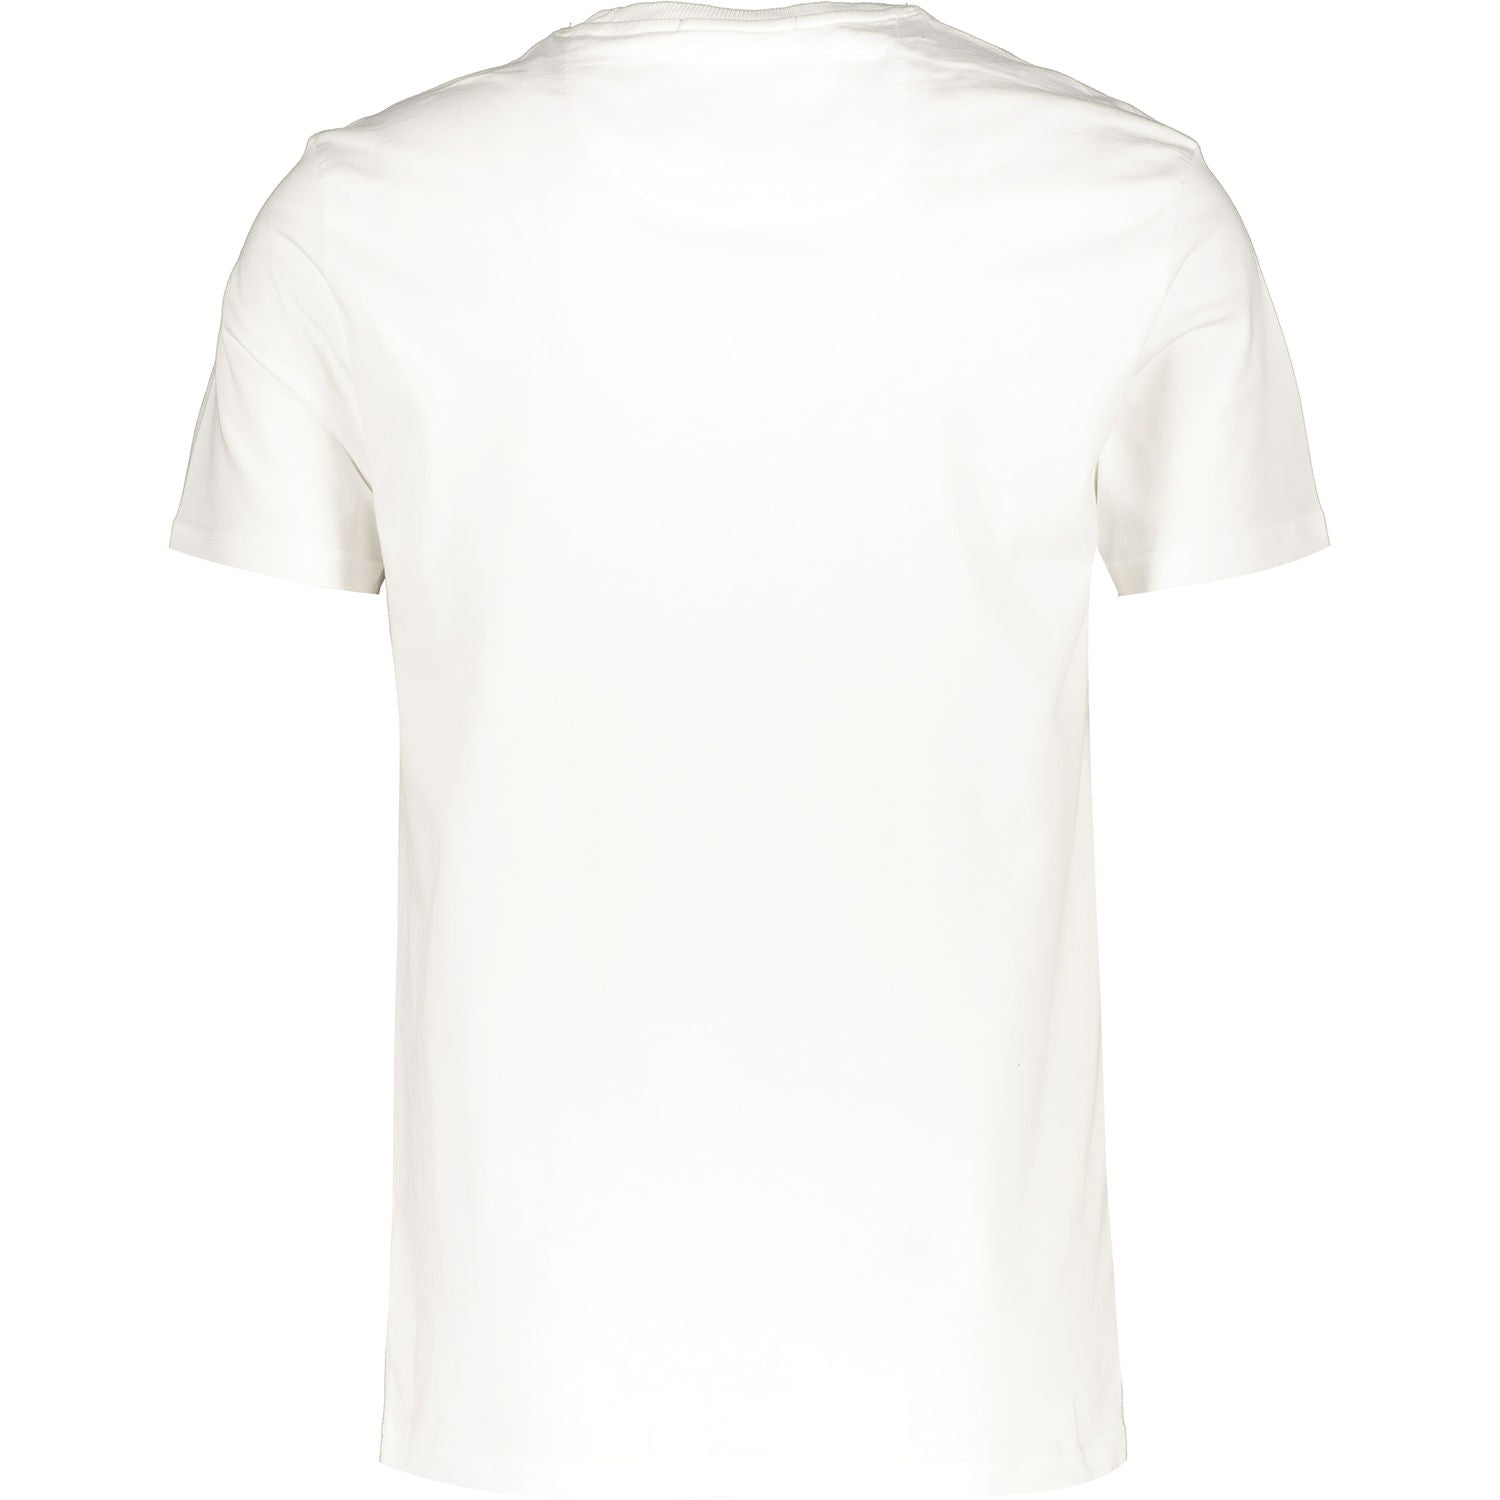 Drift King - Bali T-Shirt - LabelledUp.com